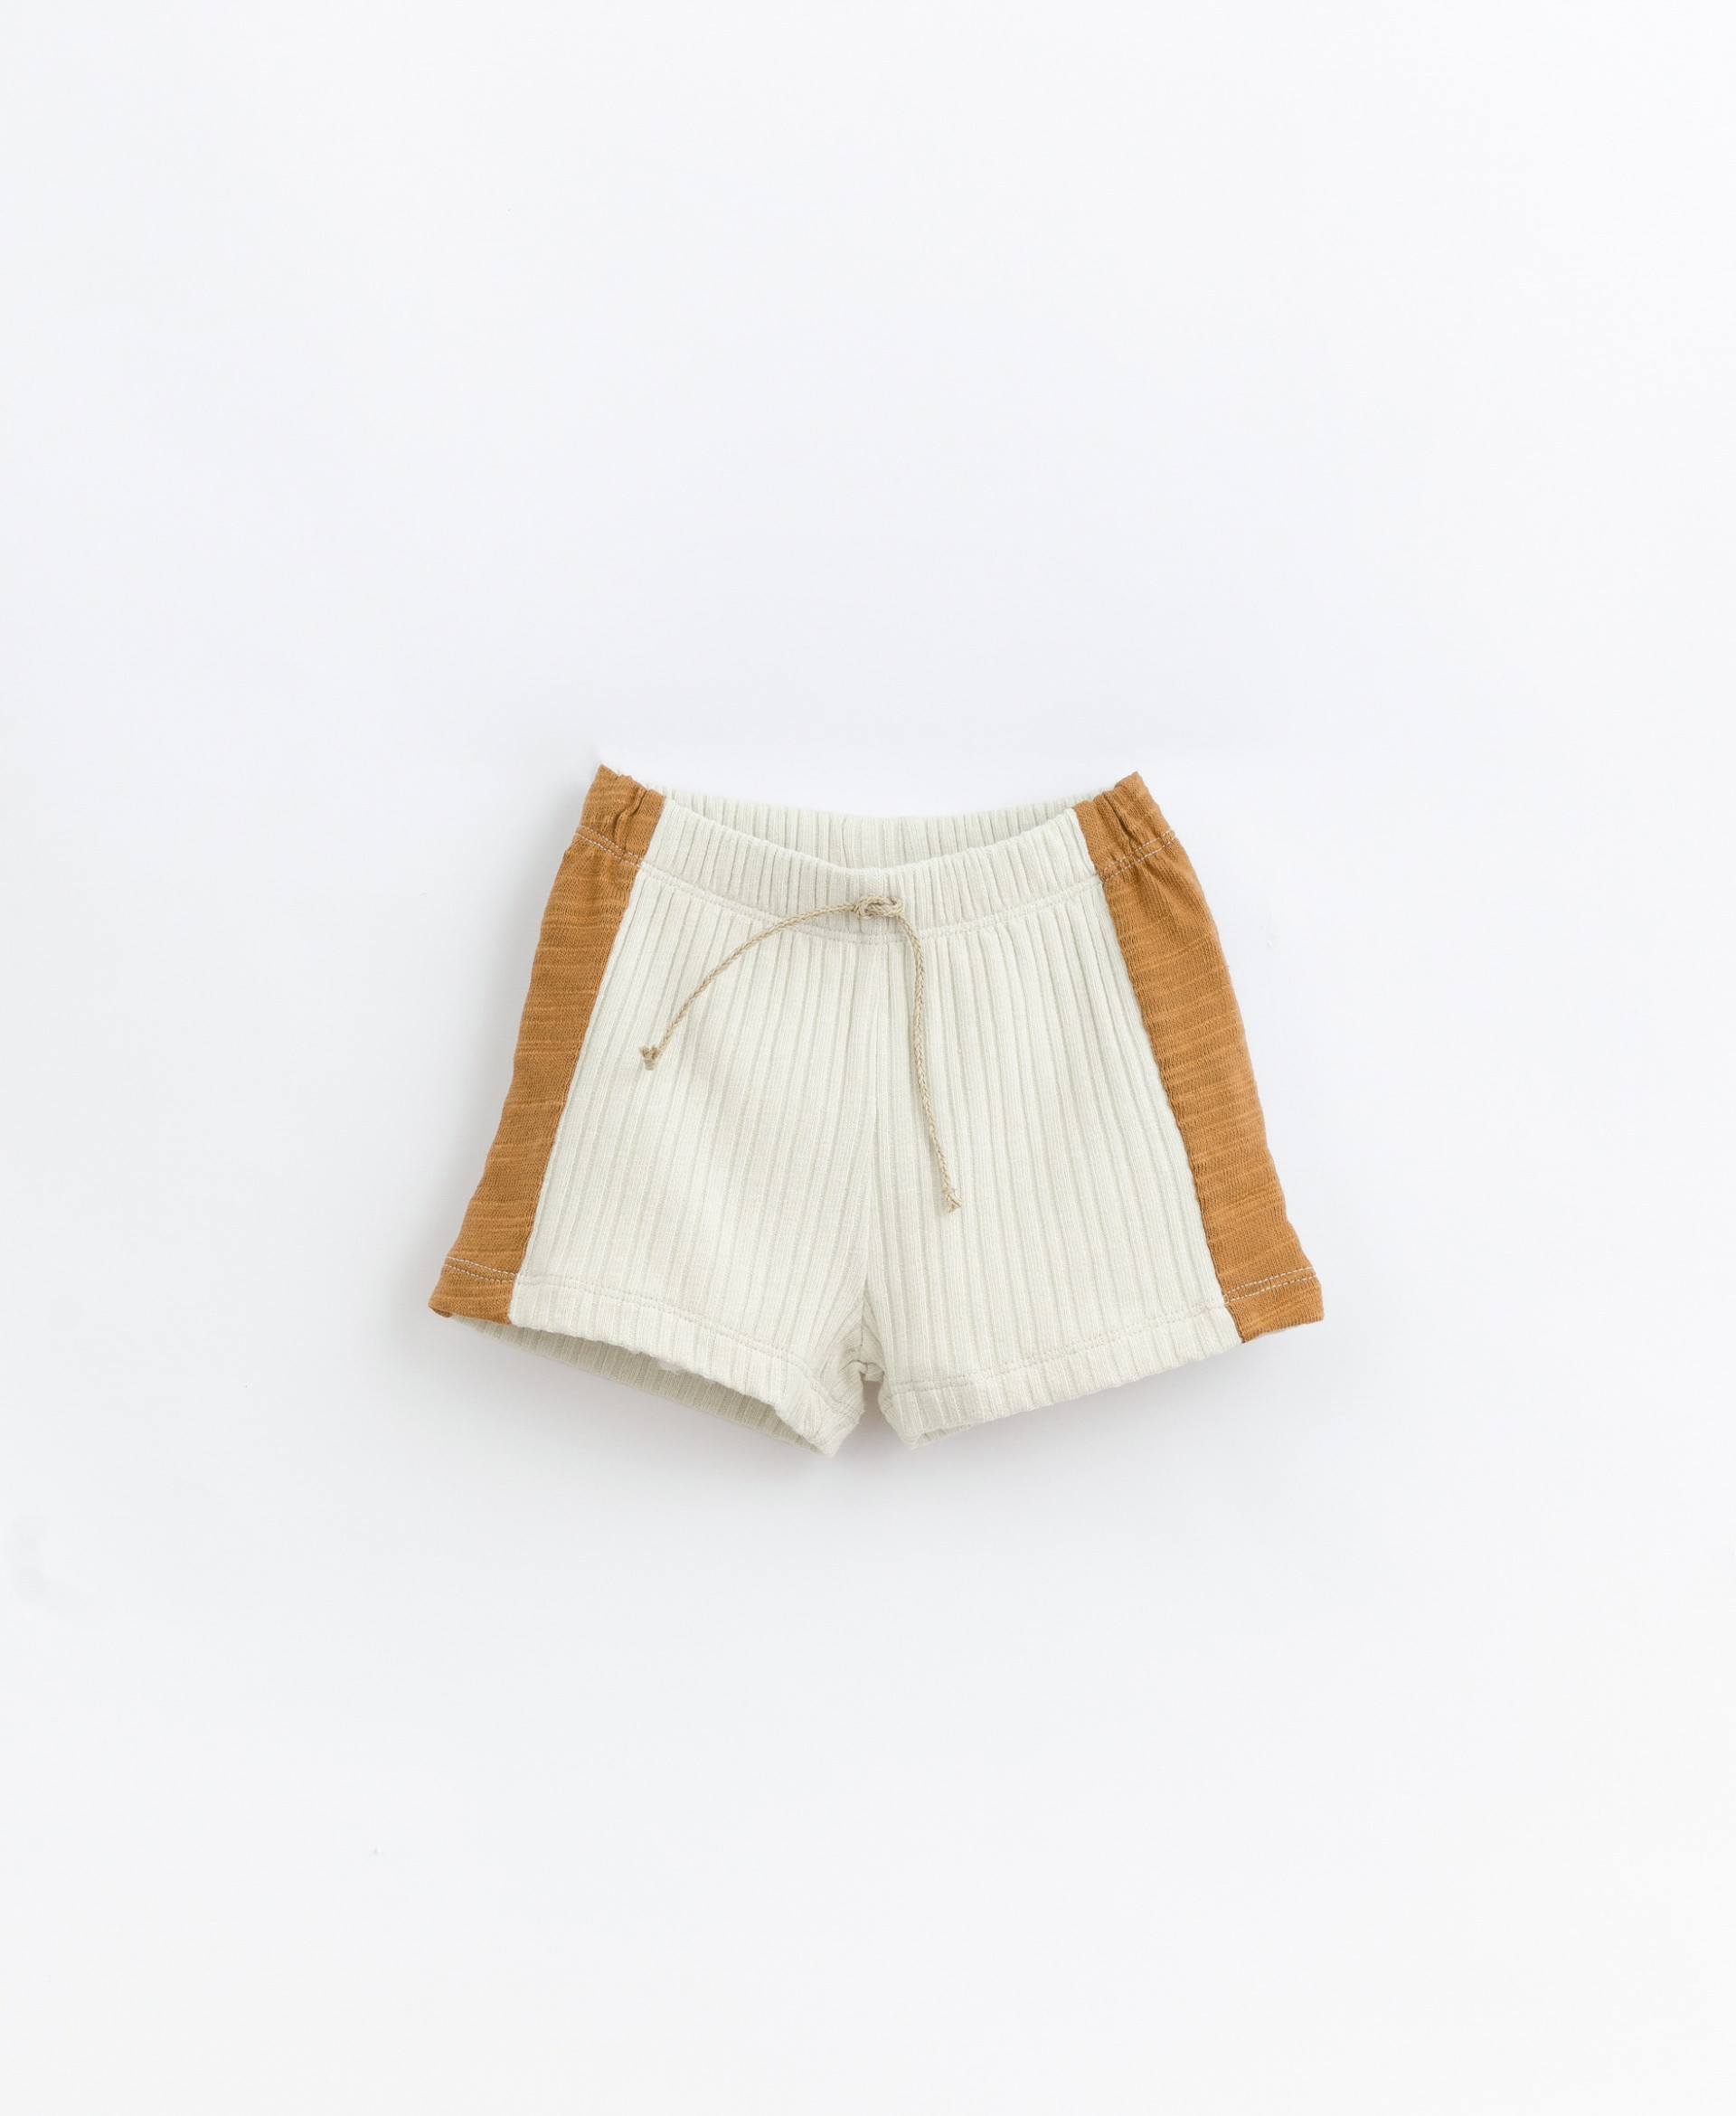 Pantalones cortos de ajuste al contraste | Basketry 